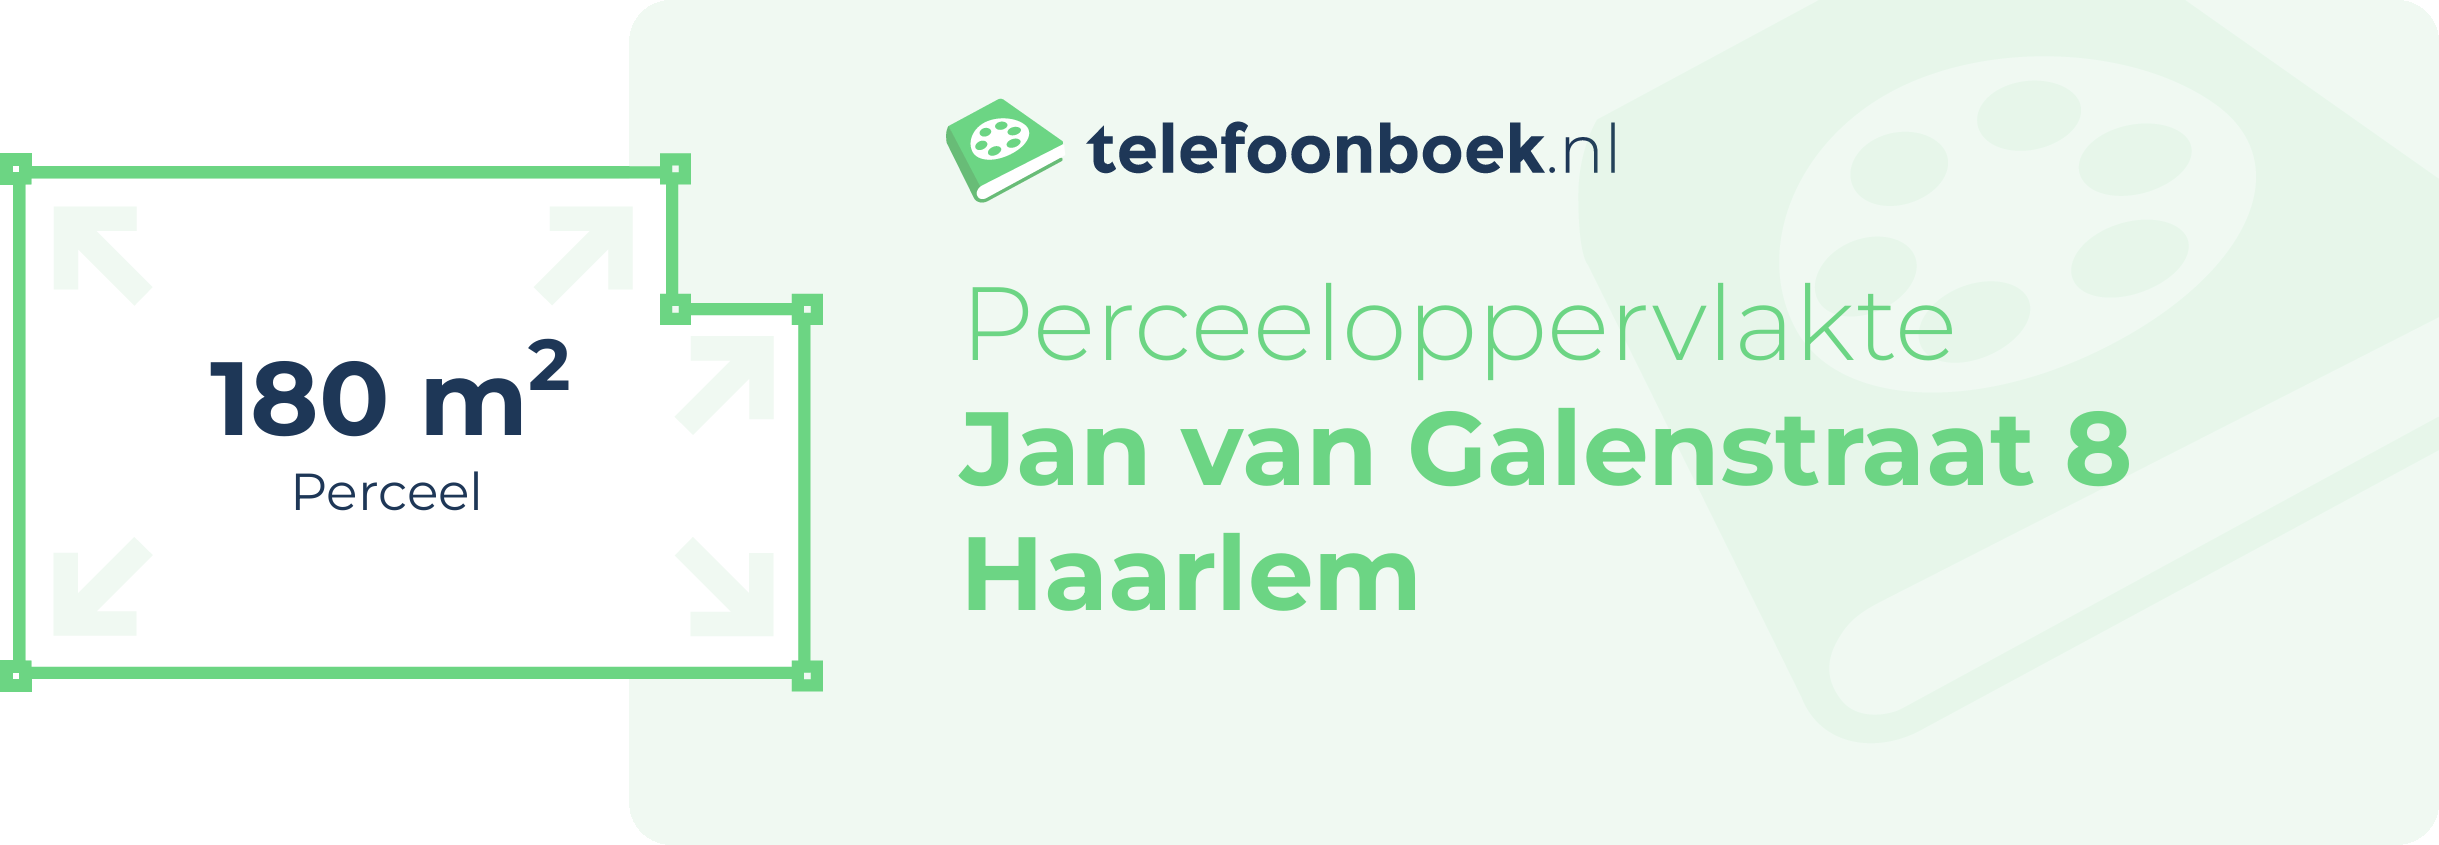 Perceeloppervlakte Jan Van Galenstraat 8 Haarlem